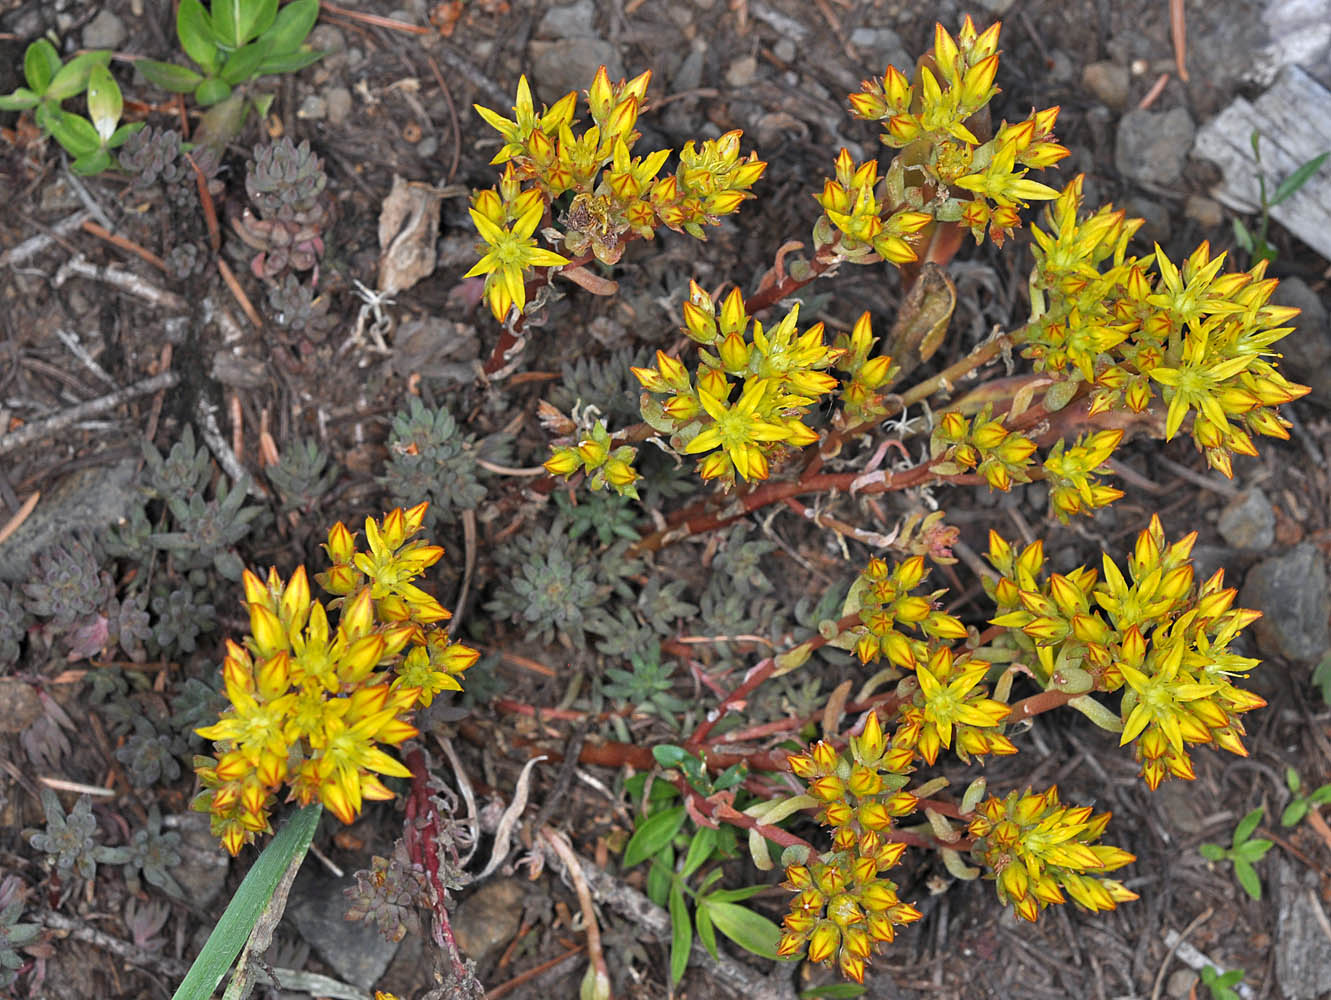 Flora of Eastern Washington Image: Sedum lanceolatum